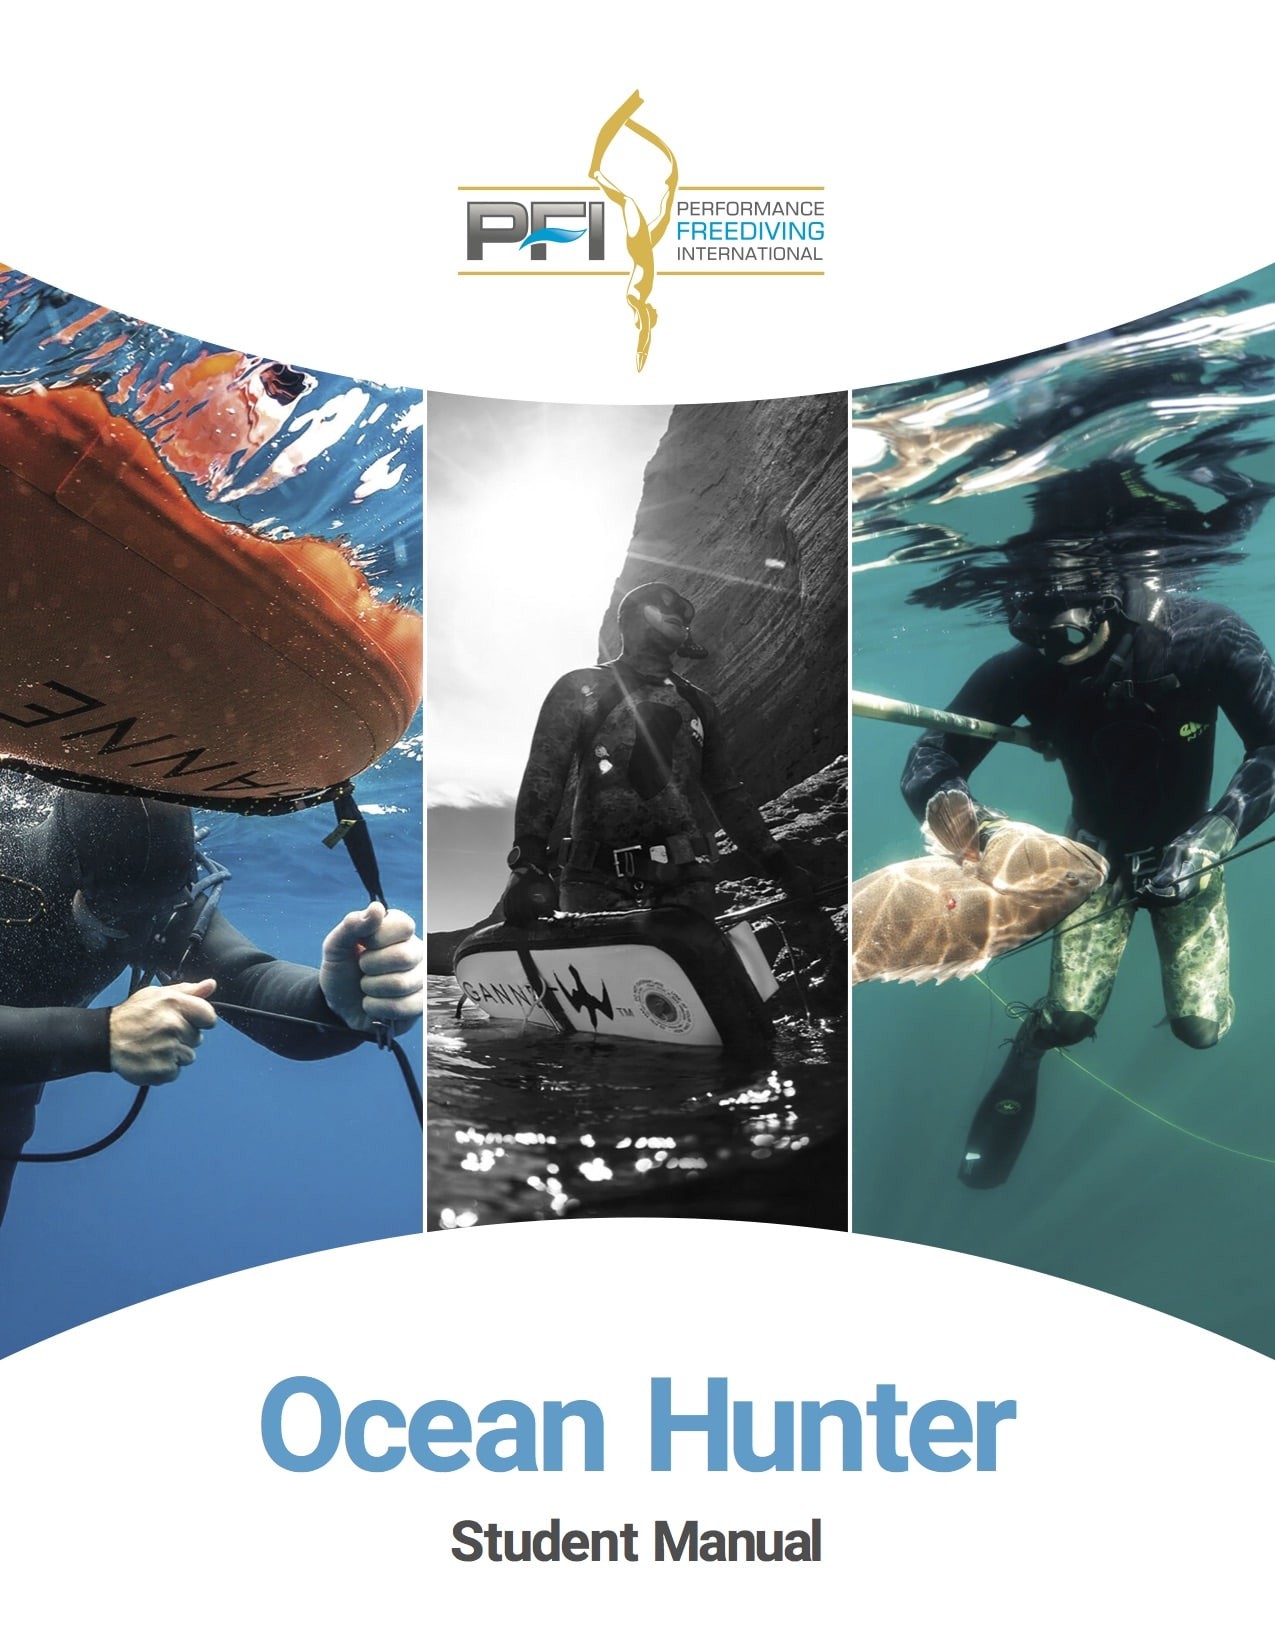 Ocean Hunter program from PFI